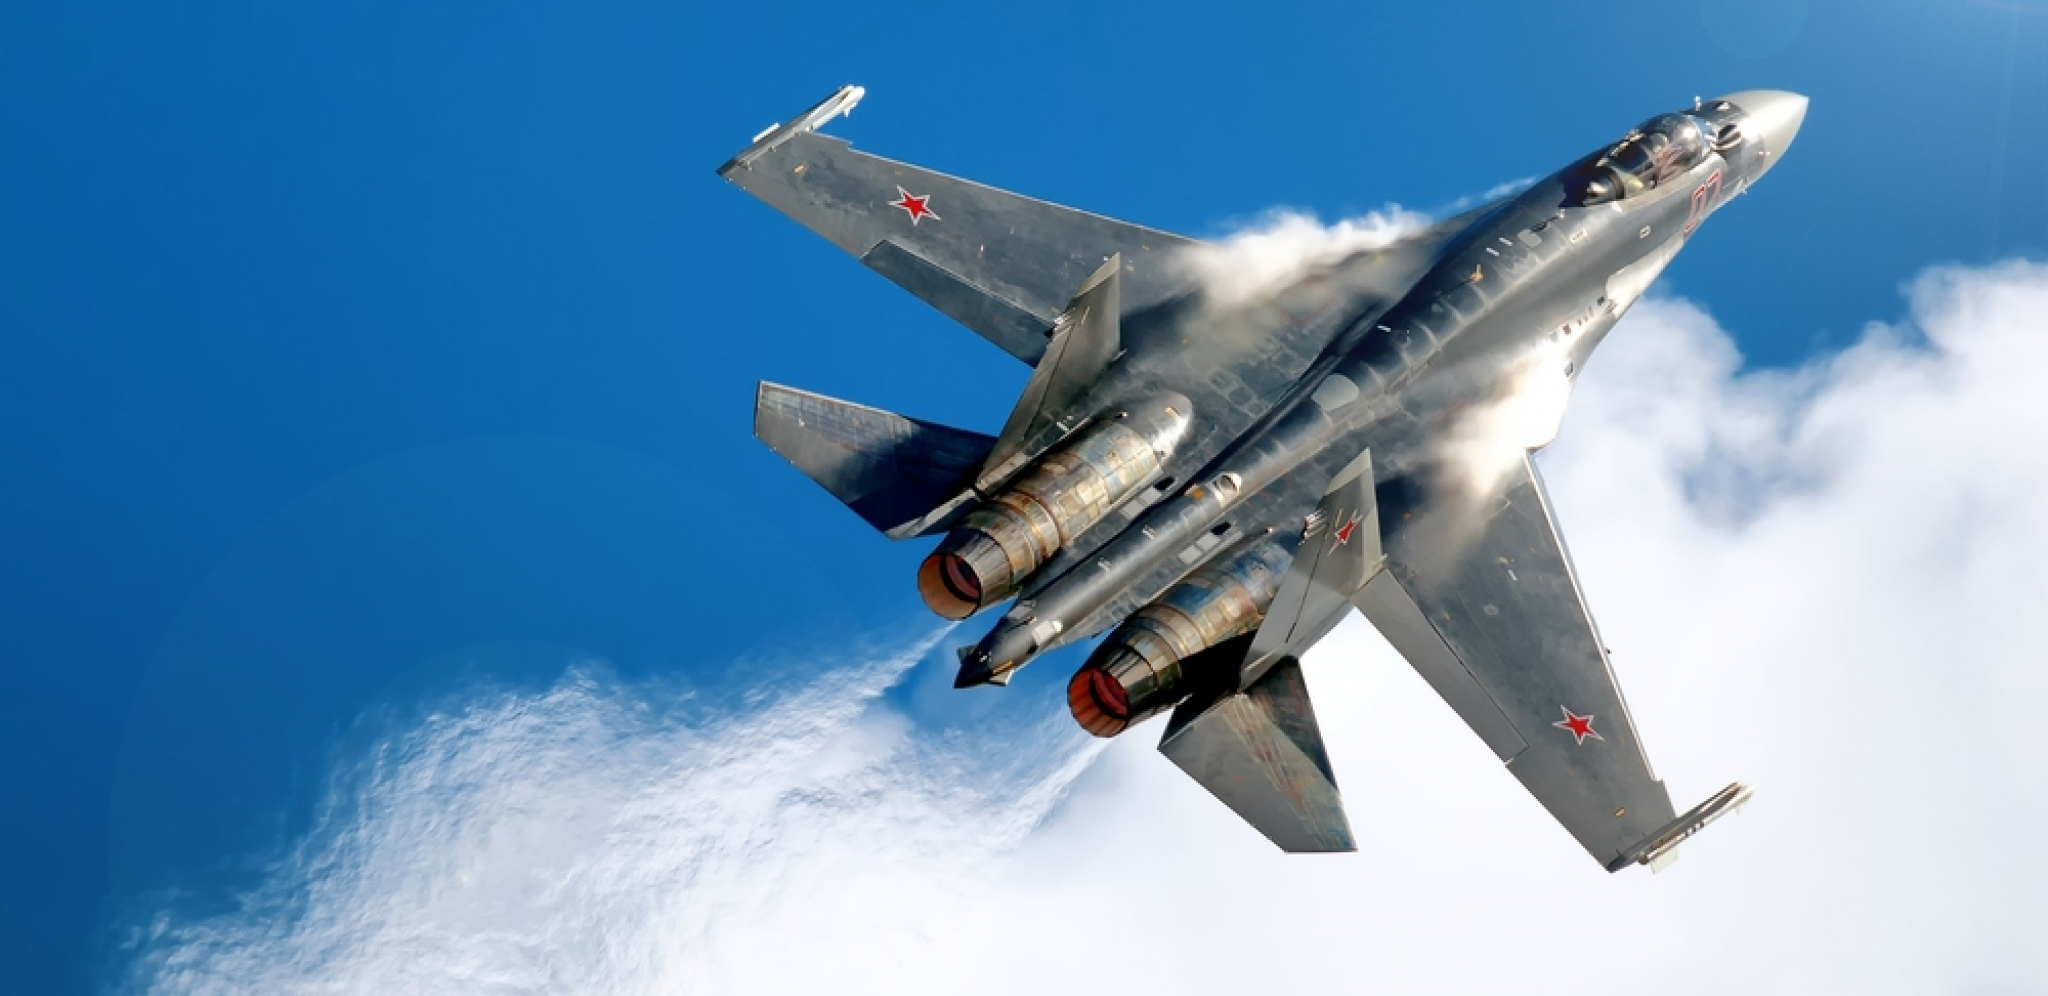 IRANCI NABAVLJAJU MOĆNI RUSKI LOVAC Amerikanci u neverici: Su-35 je neprocenjivo bogatstvo